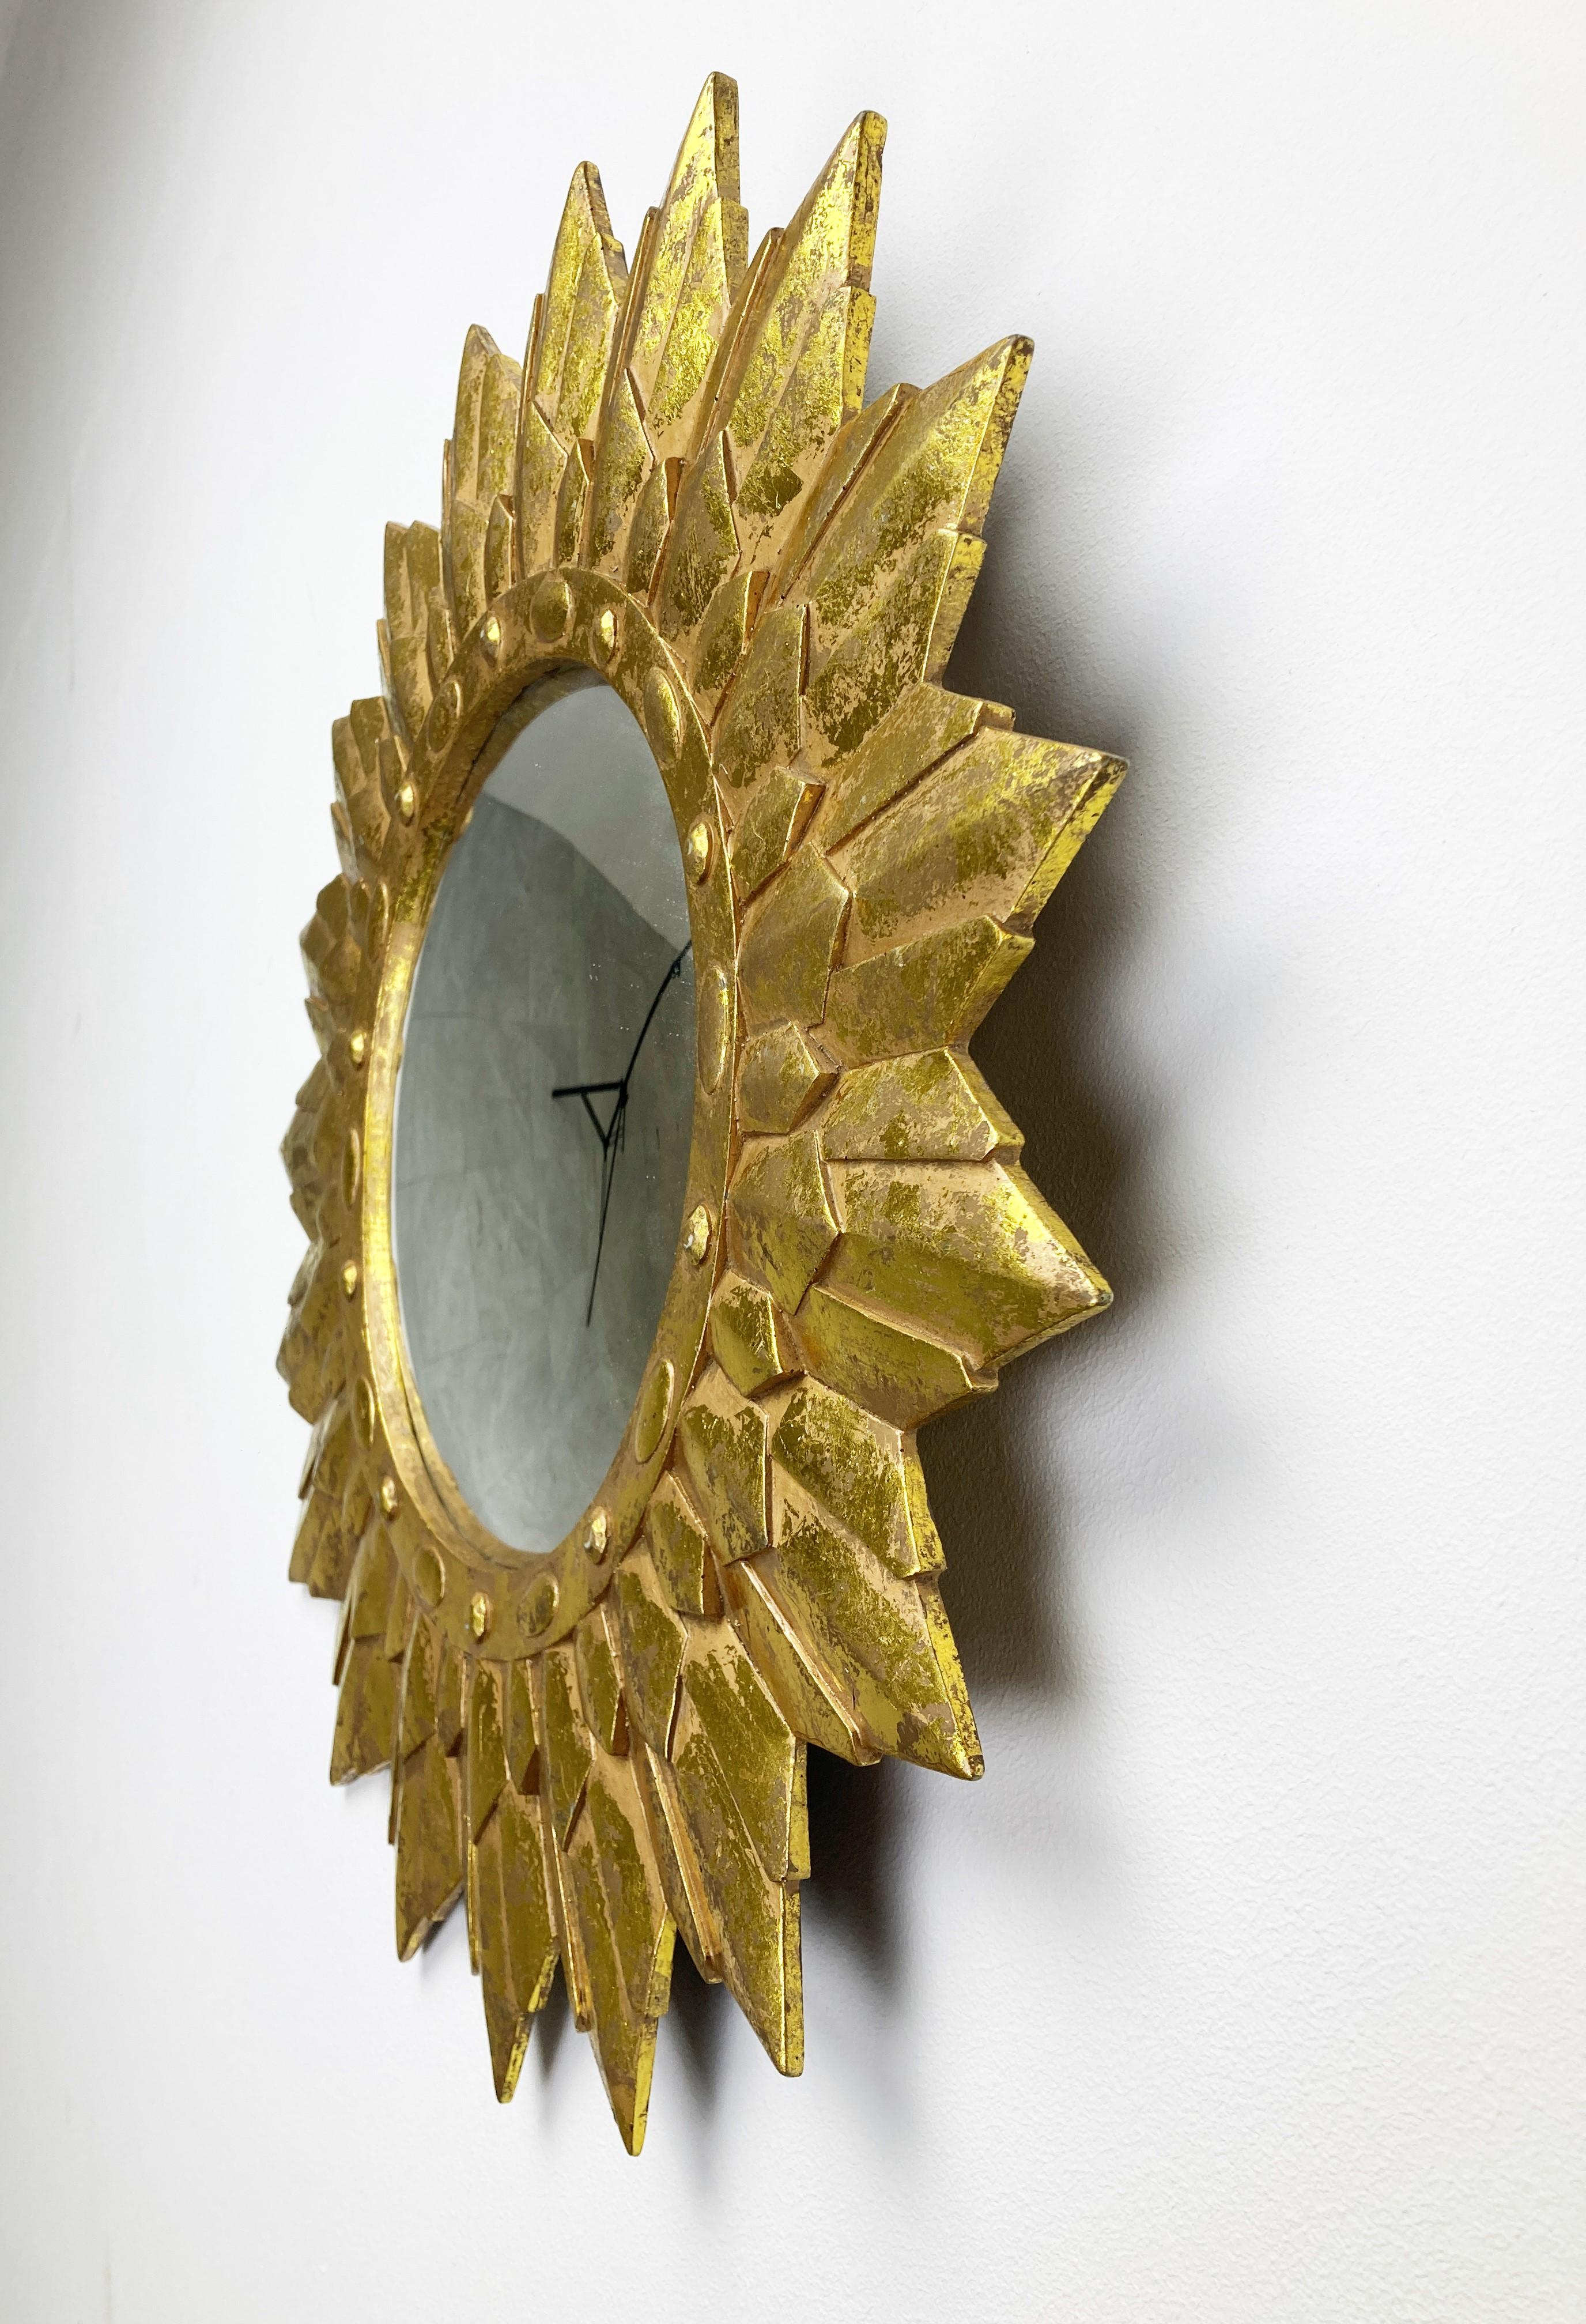 Spiegel mit Sonnenschliff aus vergoldetem Harz und konvexem Spiegelglas.

Der goldene Spiegel ist in einem sehr guten Zustand, schön patiniert.

1960er Jahre - hergestellt in Belgien.

Abmessungen:
Durchmesser: 50cm/19.68